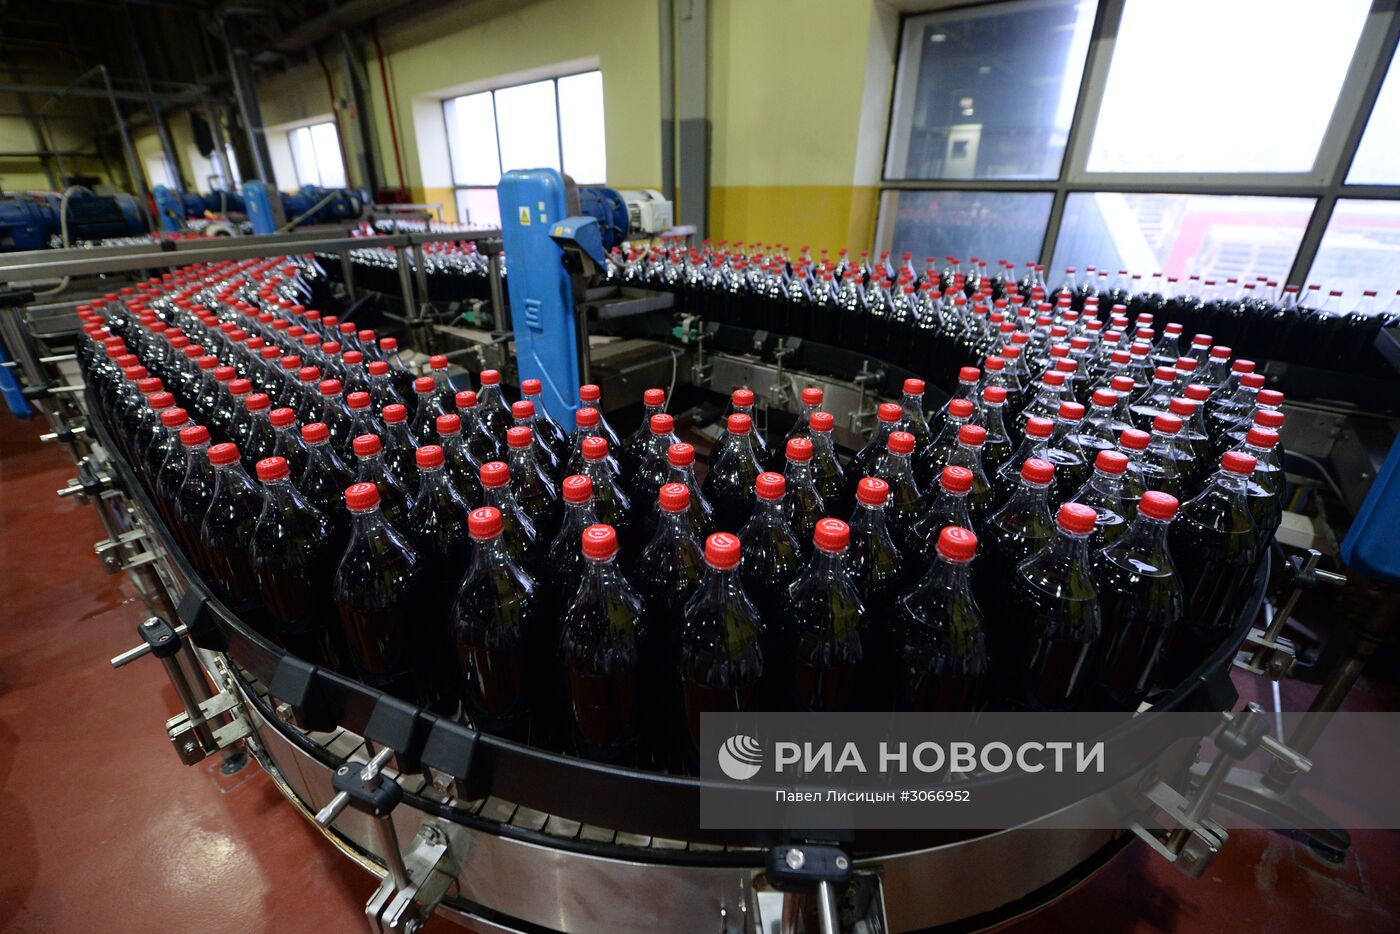 Завод Сoca-Cola HBC Россия